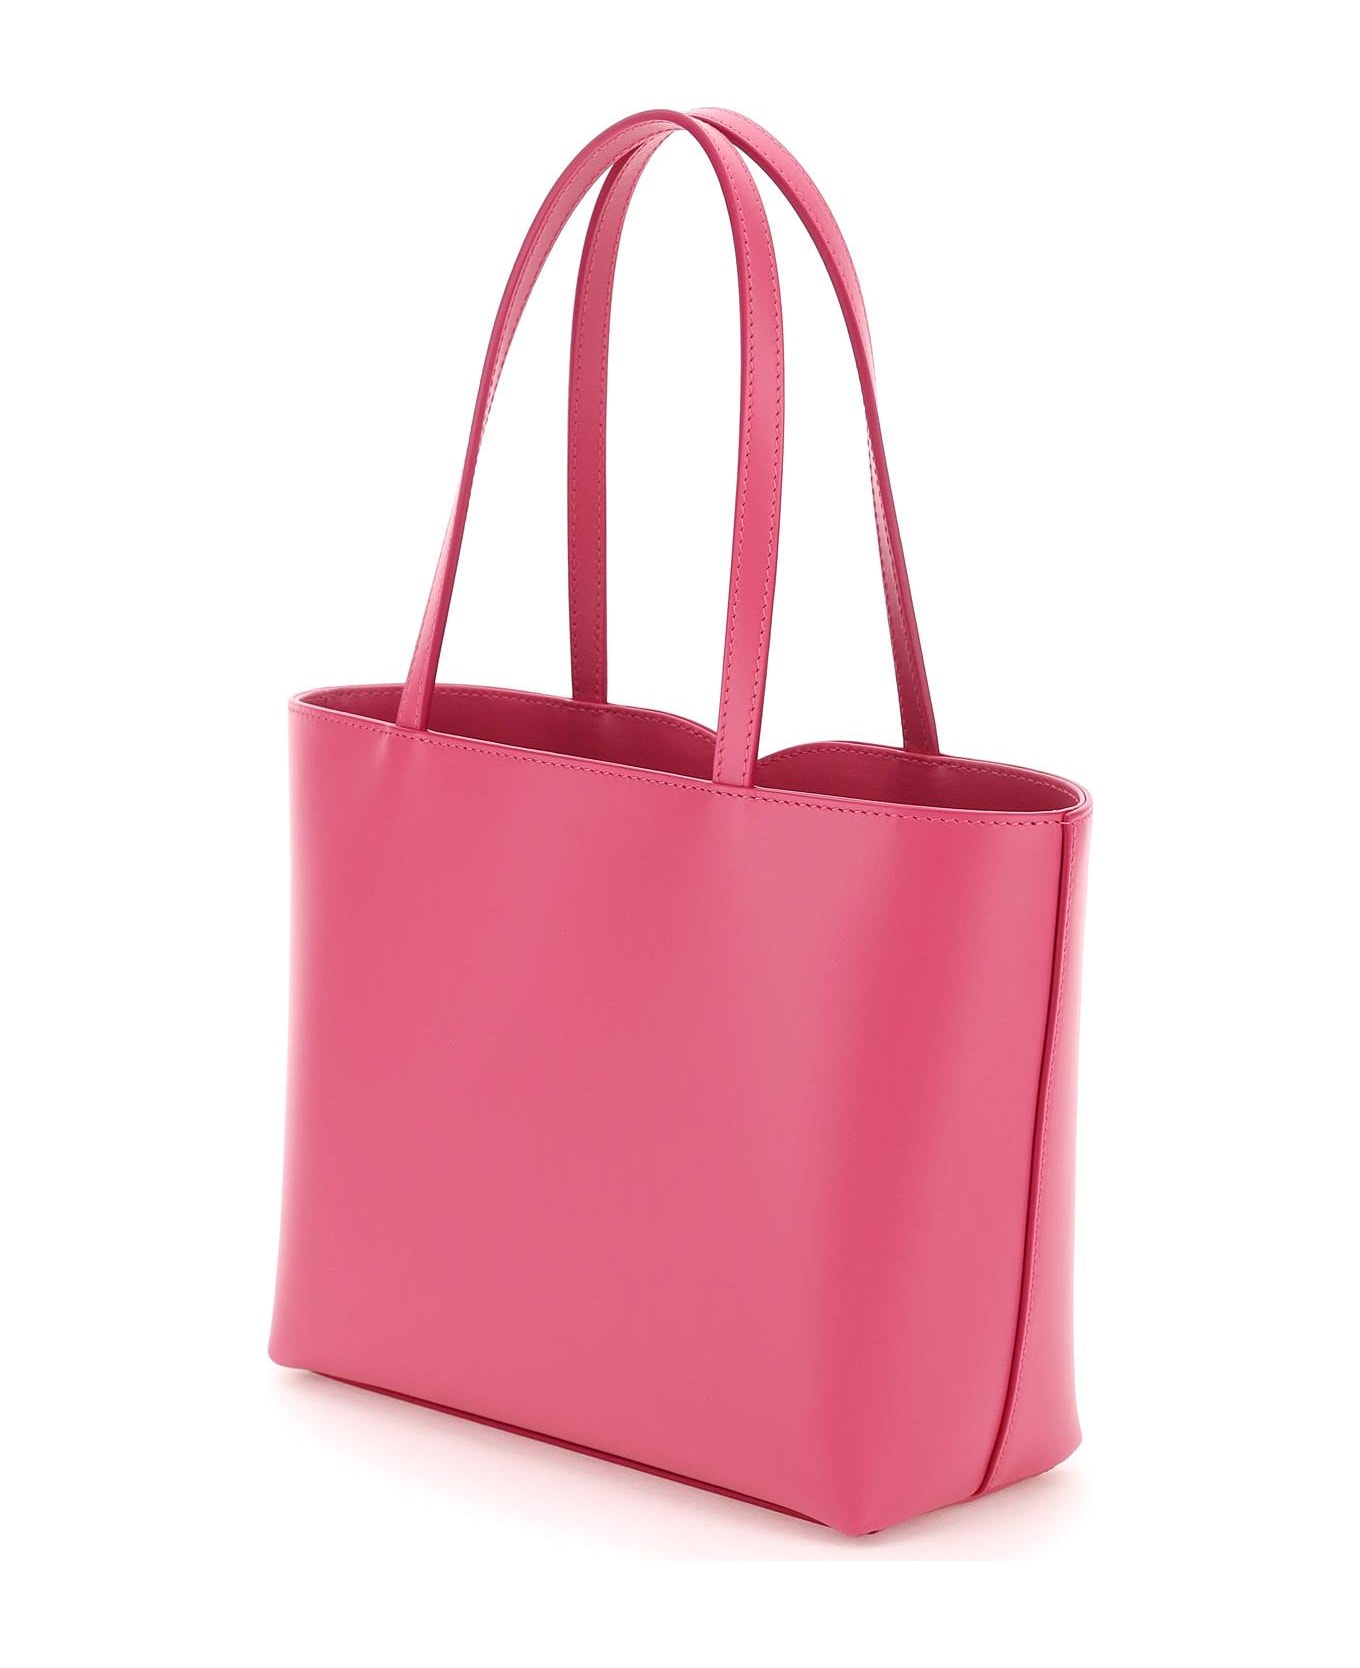 Dolce & Gabbana Shopping Bag - Glicine トートバッグ